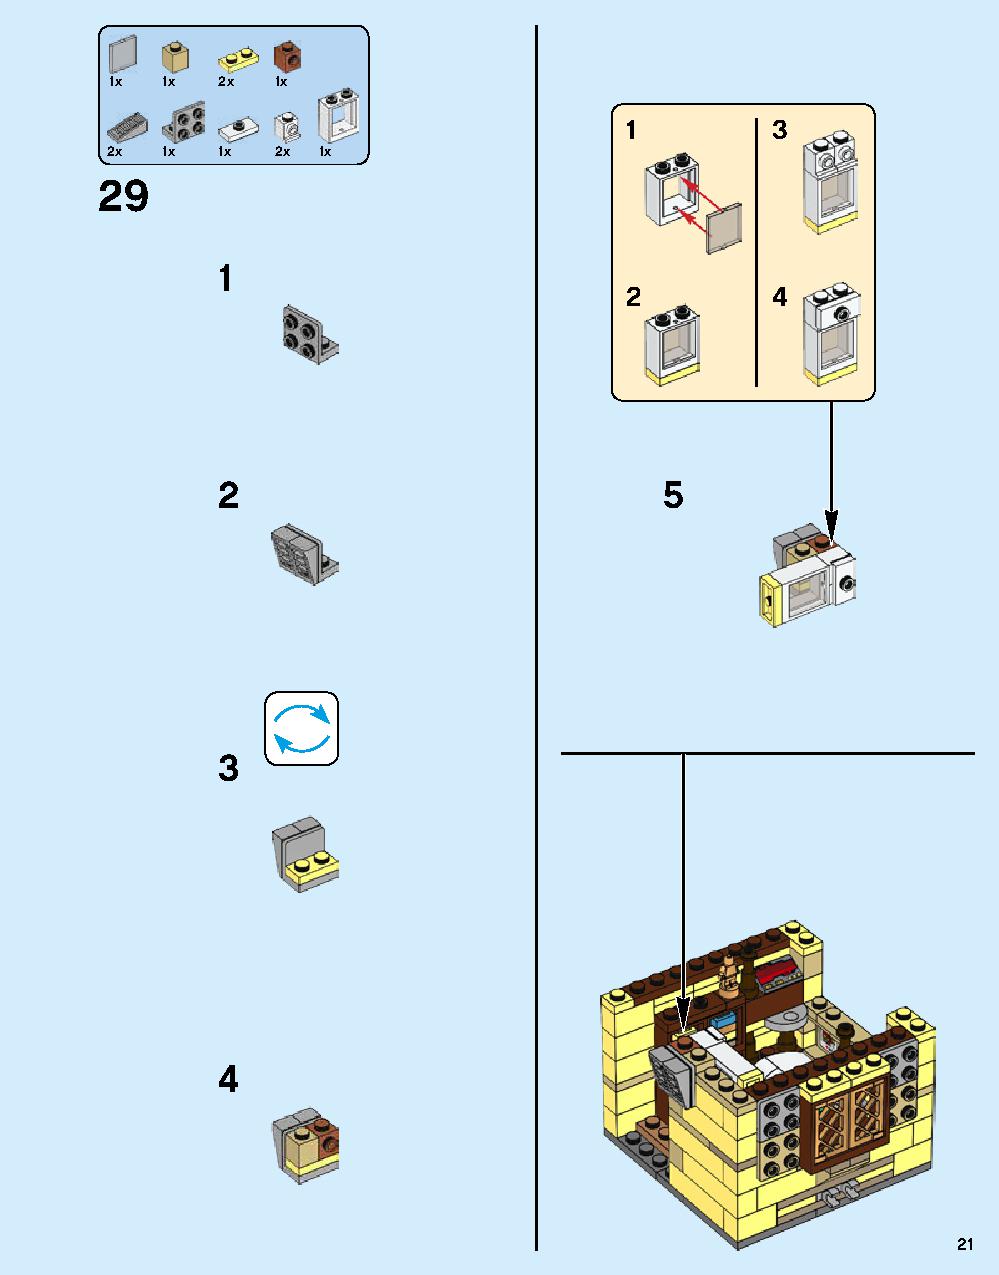 ニンジャゴー シティ 70620 レゴの商品情報 レゴの説明書・組立方法 21 page